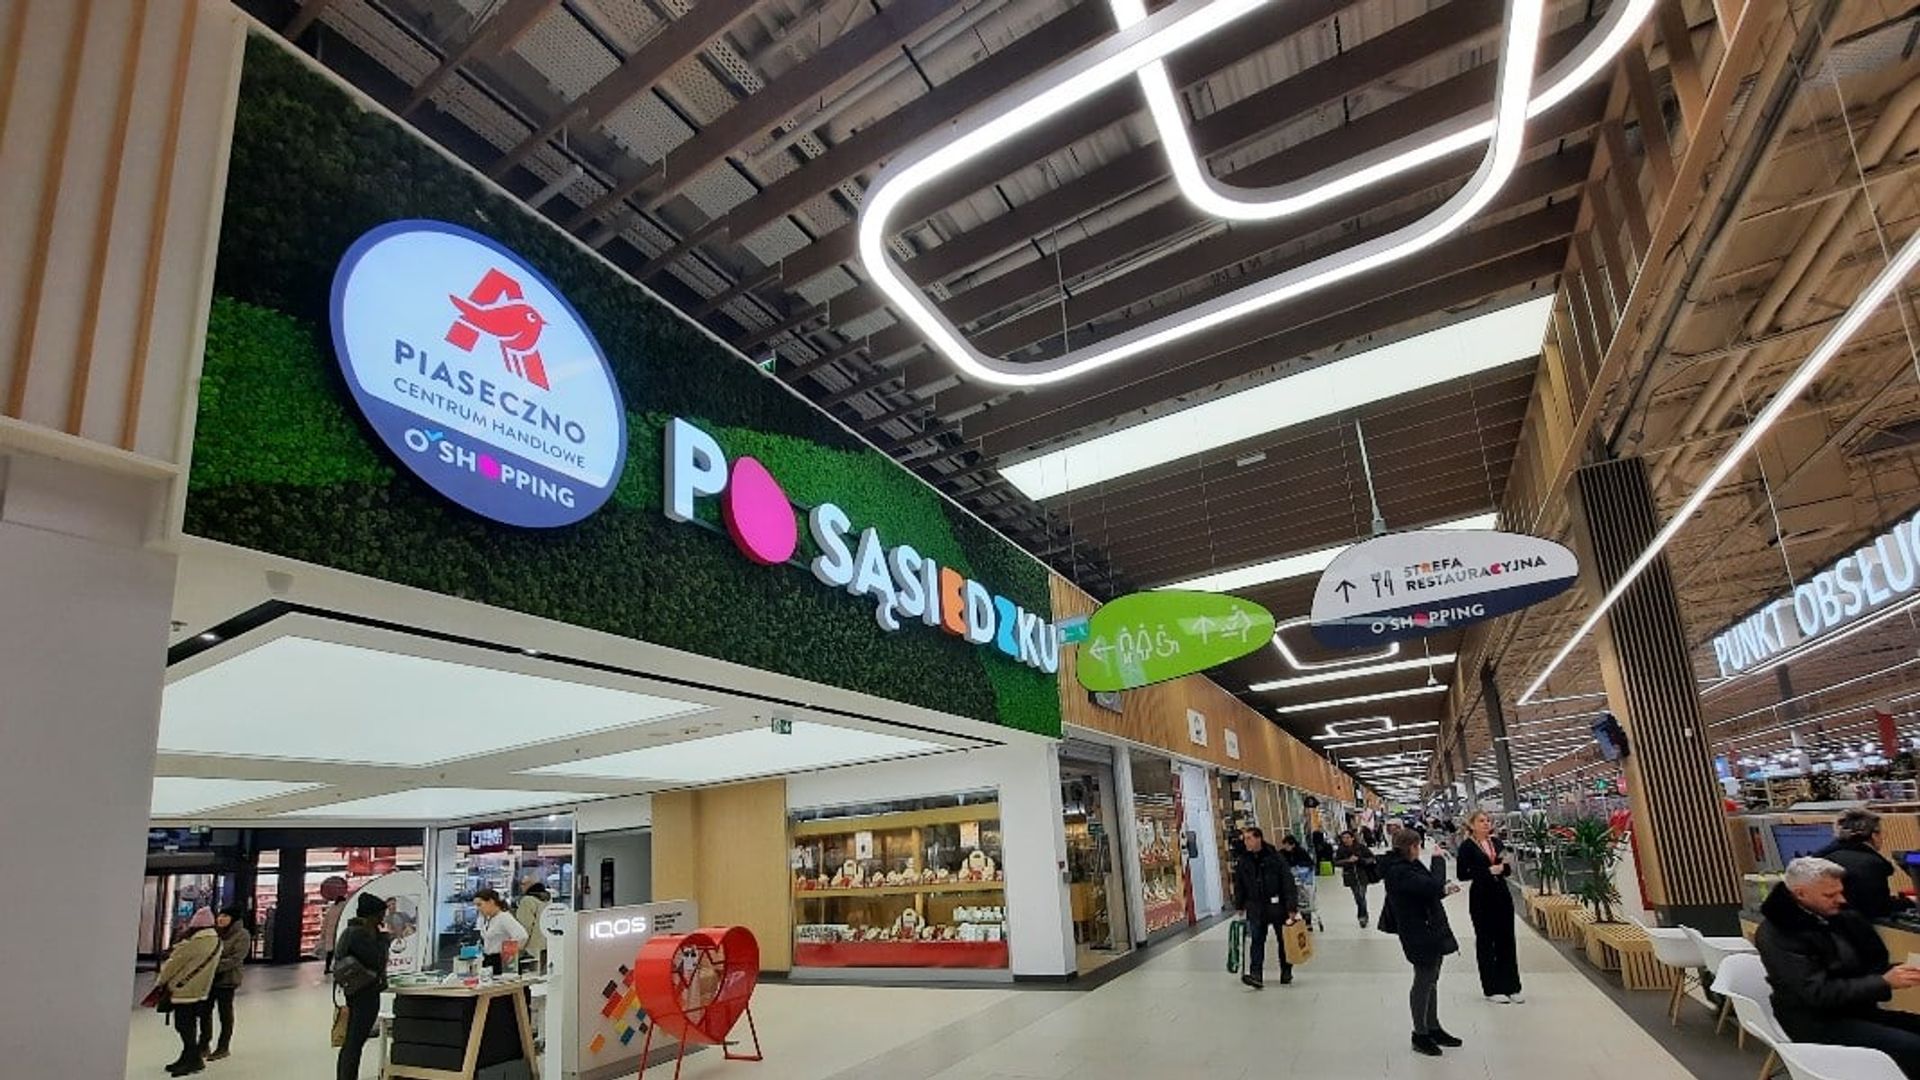 Najstarsze centrum handlowe Auchan w Polsce, w Piasecznie, przeszło gruntowny remont